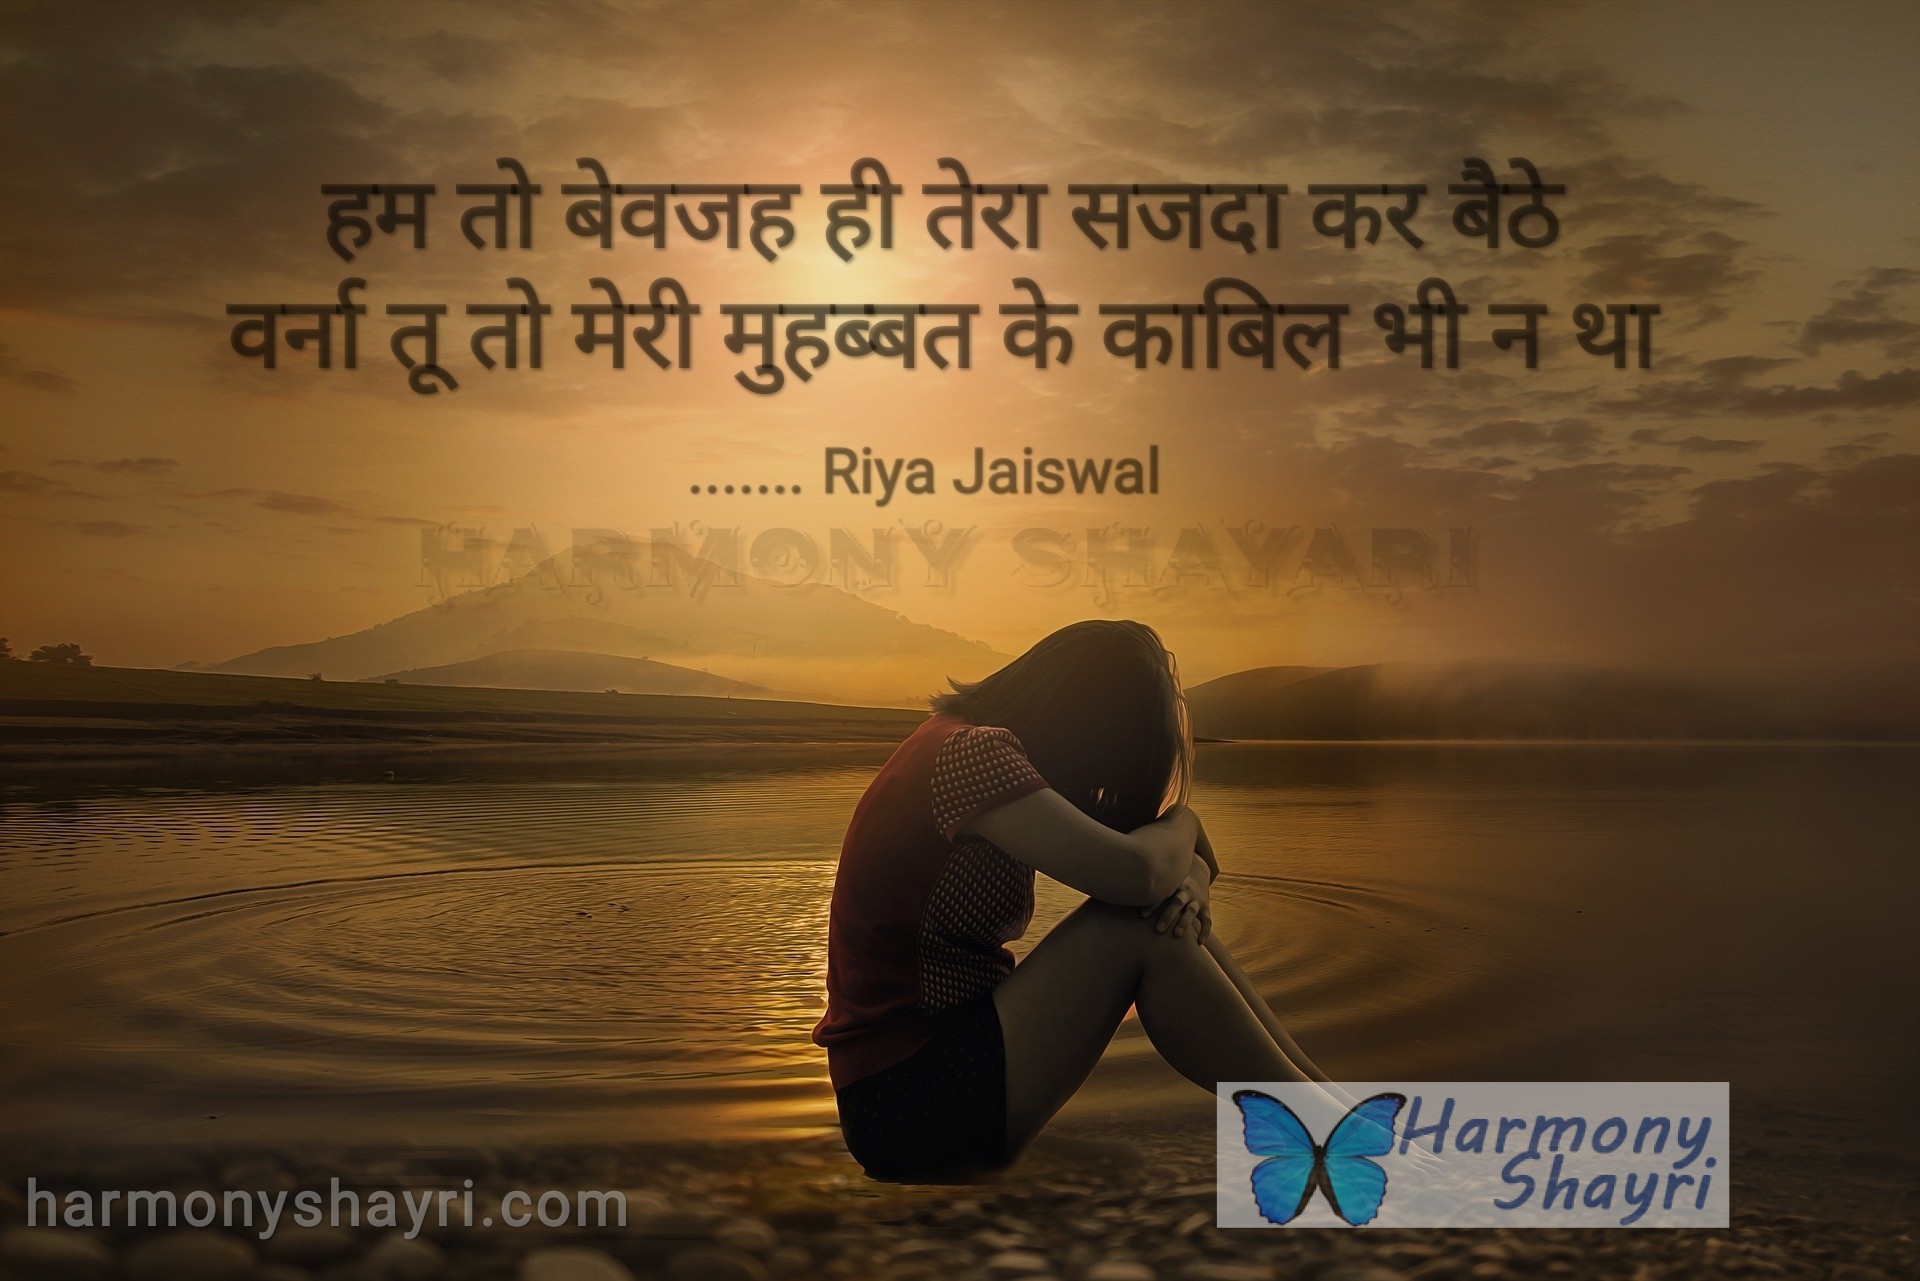 Hum to bewajah hi tera sazda kar baithe – Riya Jaiswal